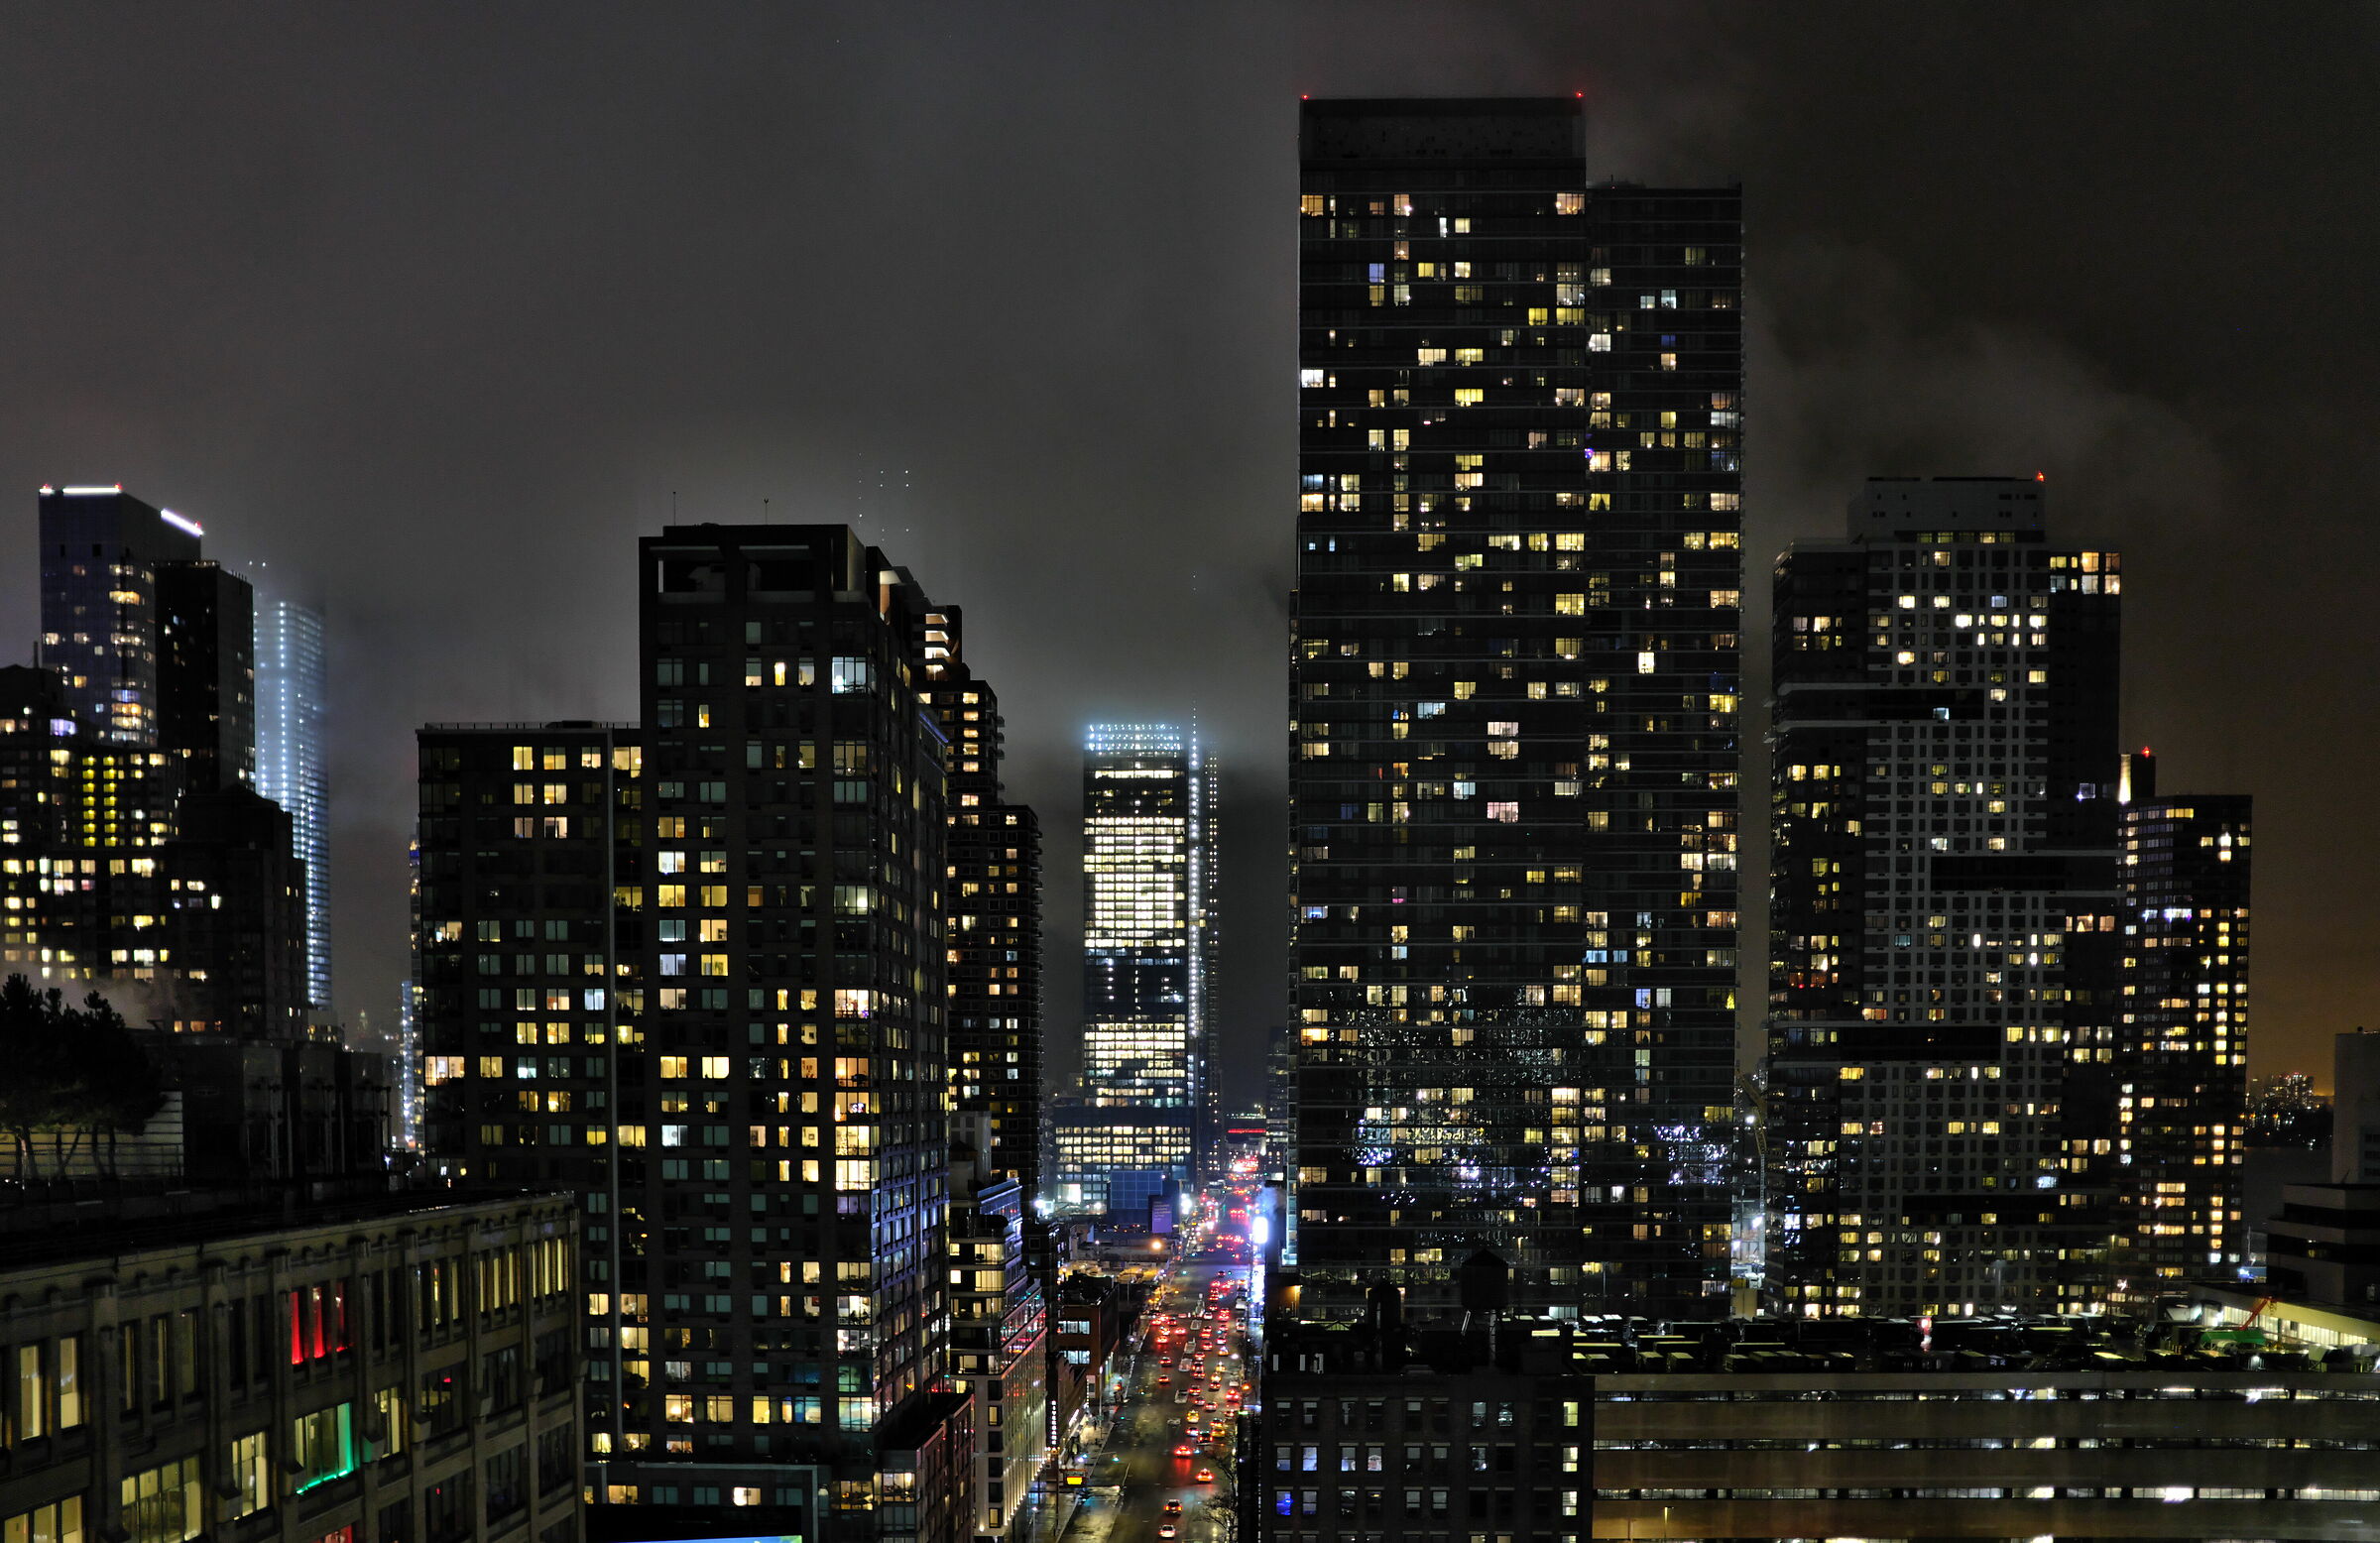 New York by night...